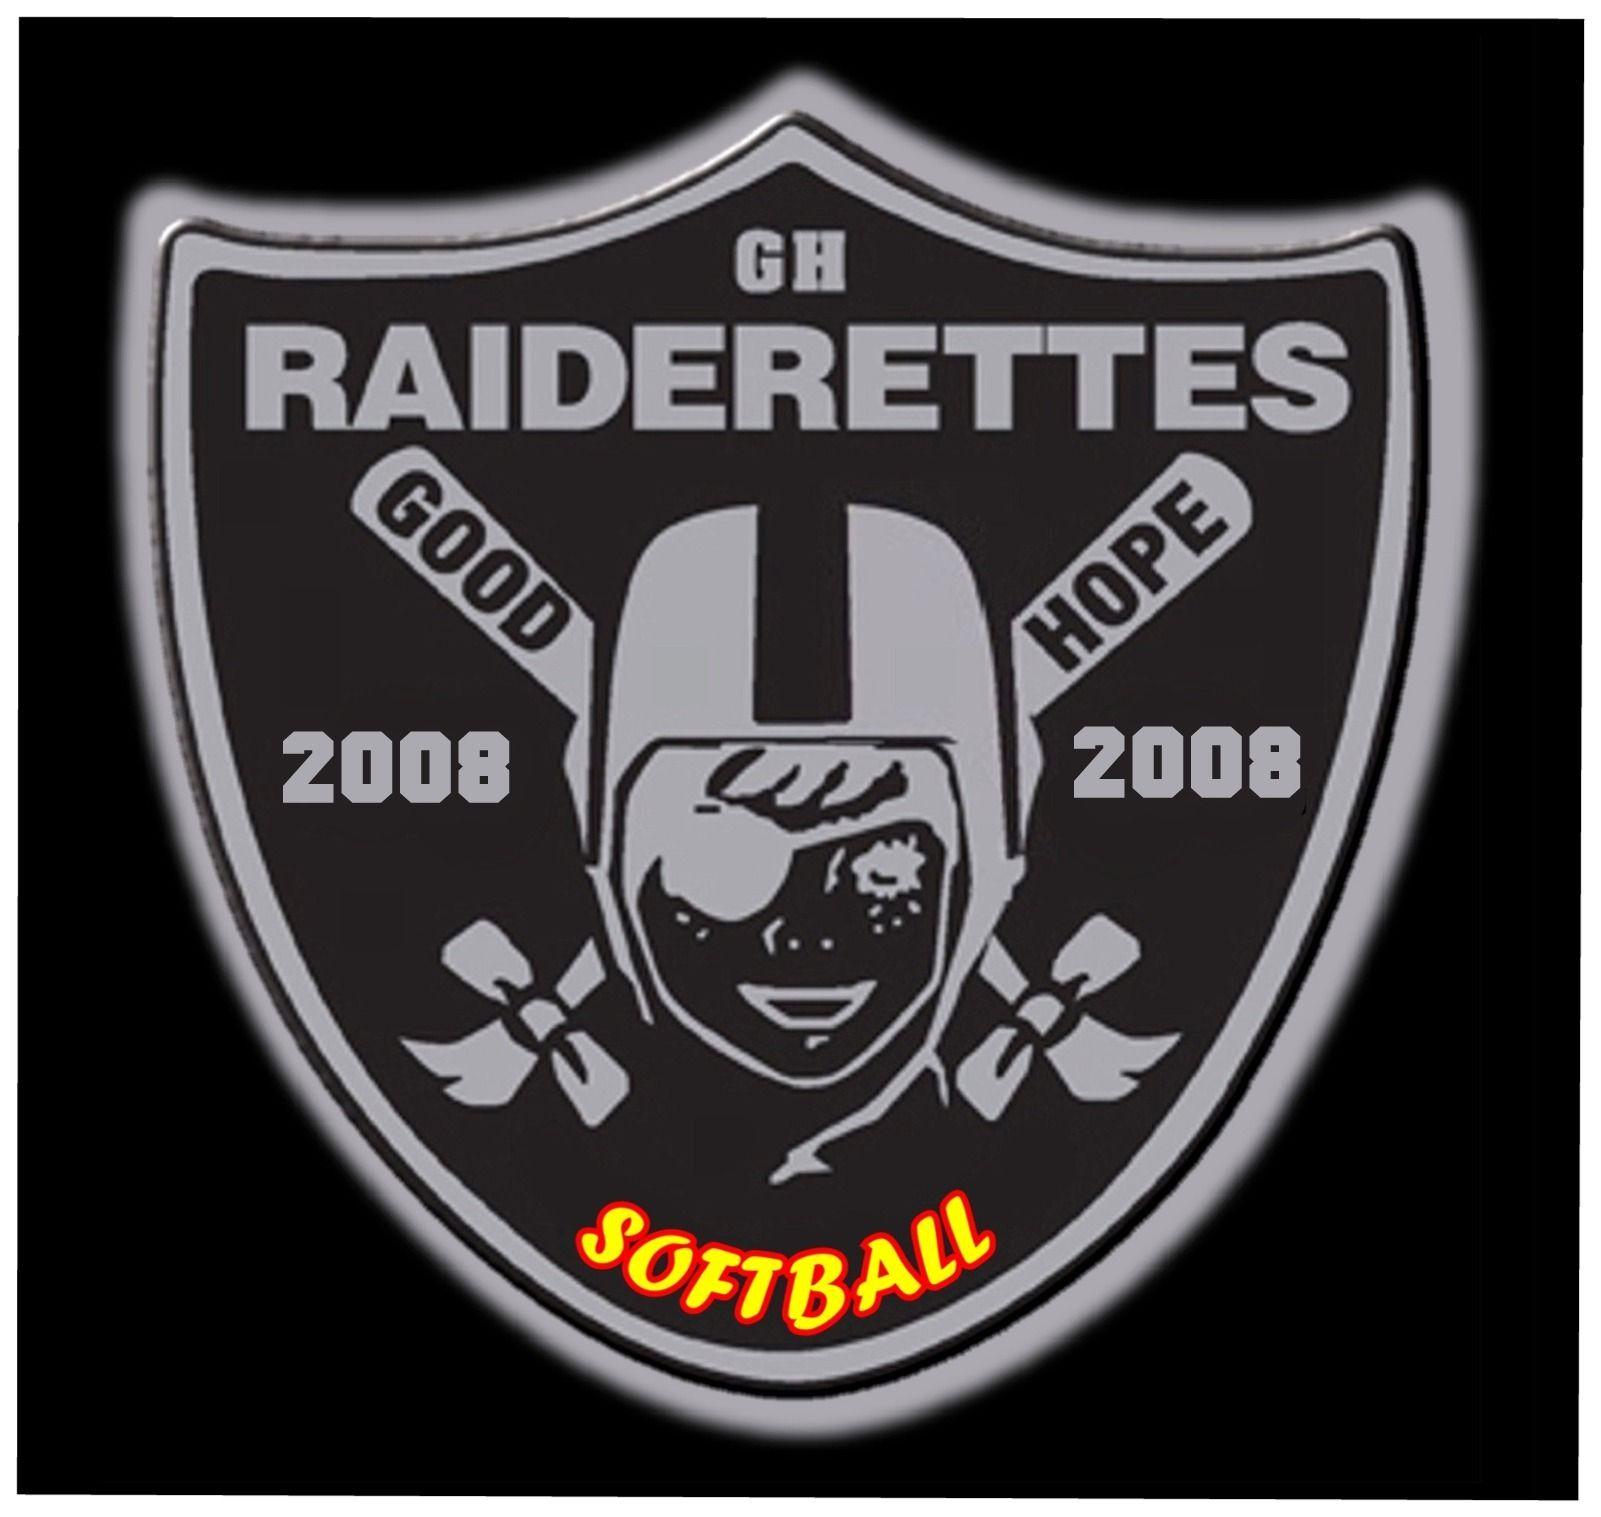 Raiderettes Logo - Best 50+ Raiderettes Wallpaper on HipWallpaper | Raiderettes ...